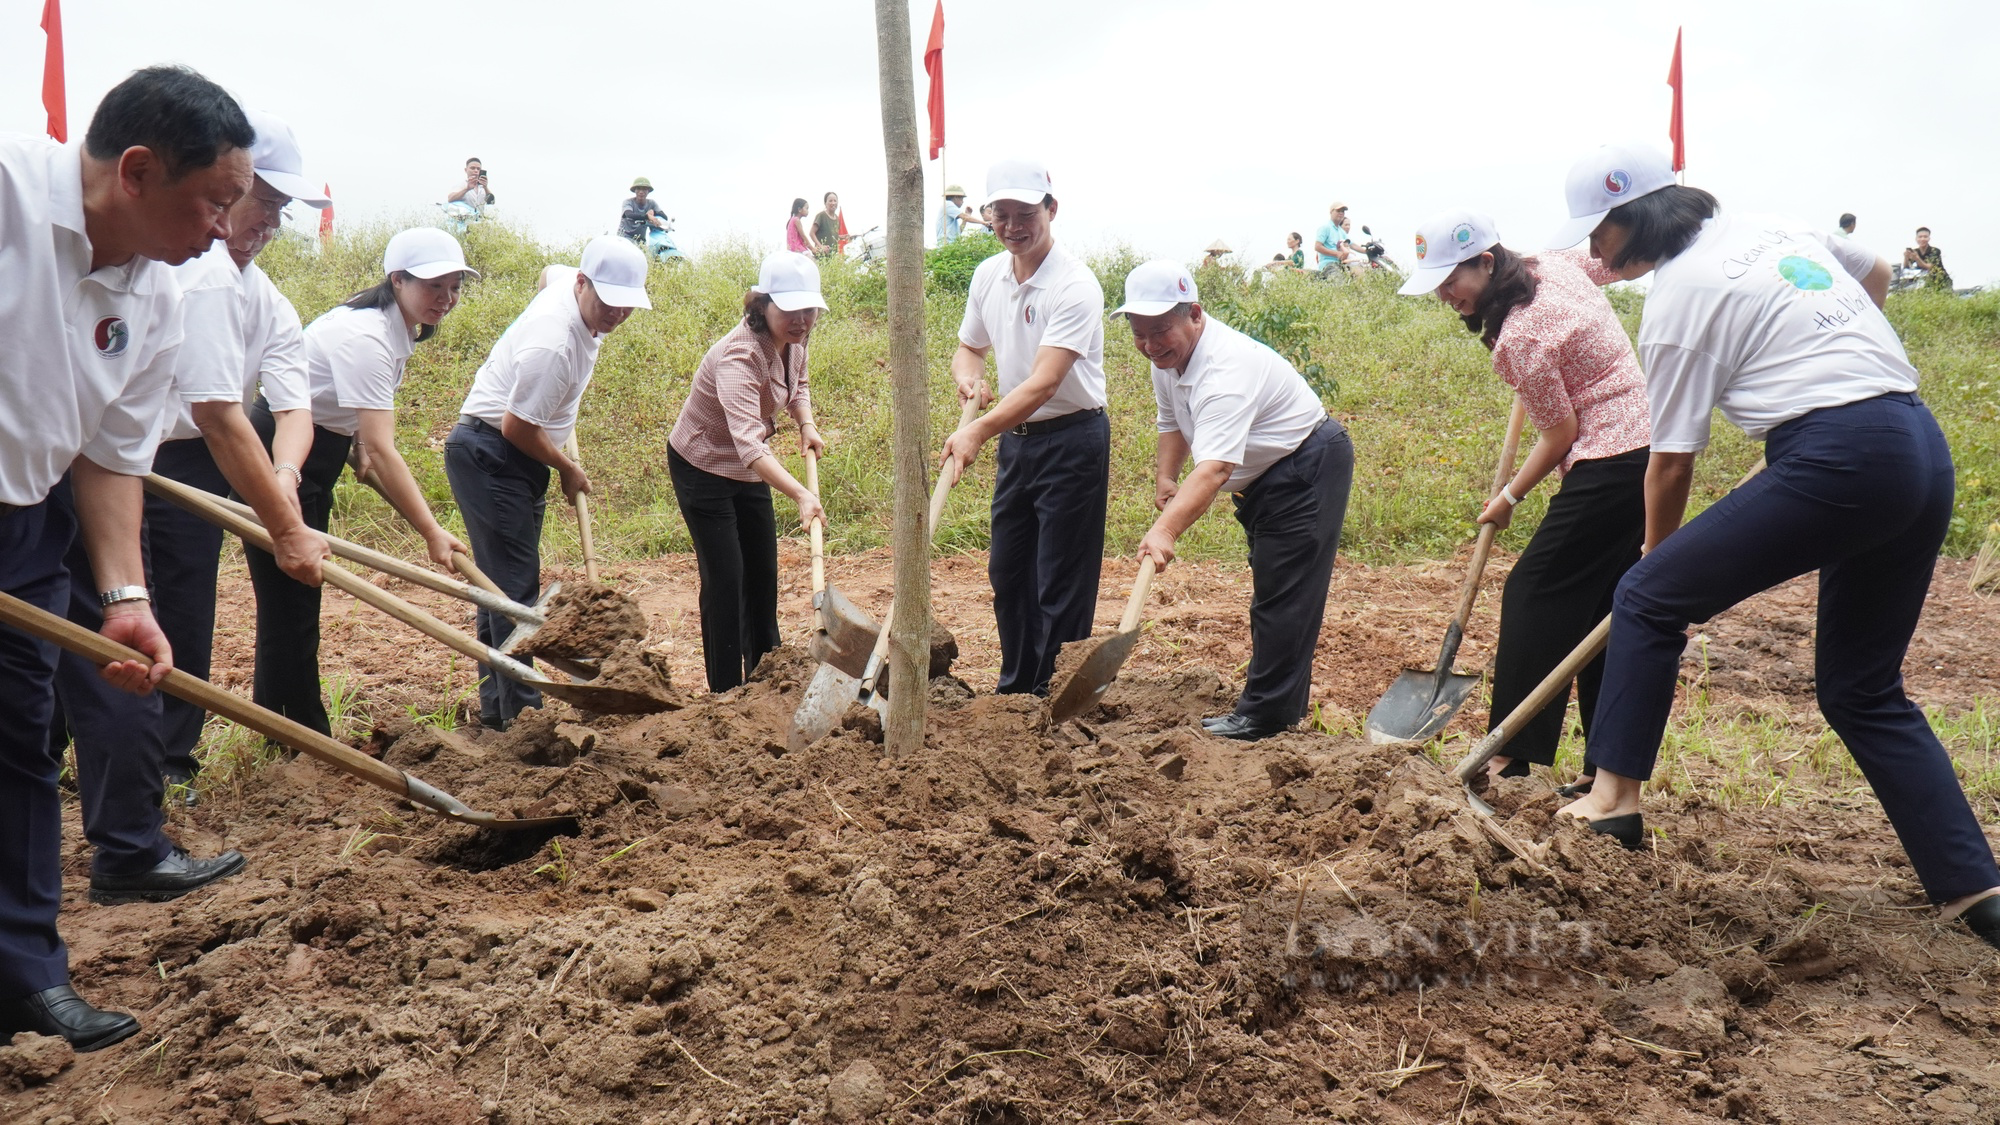 Trung ương Hội Nông dân Việt Nam cùng Bộ TNMT, tỉnh Bắc Ninh phát động Chiến dịch làm cho thế giới sạch hơn - Ảnh 2.